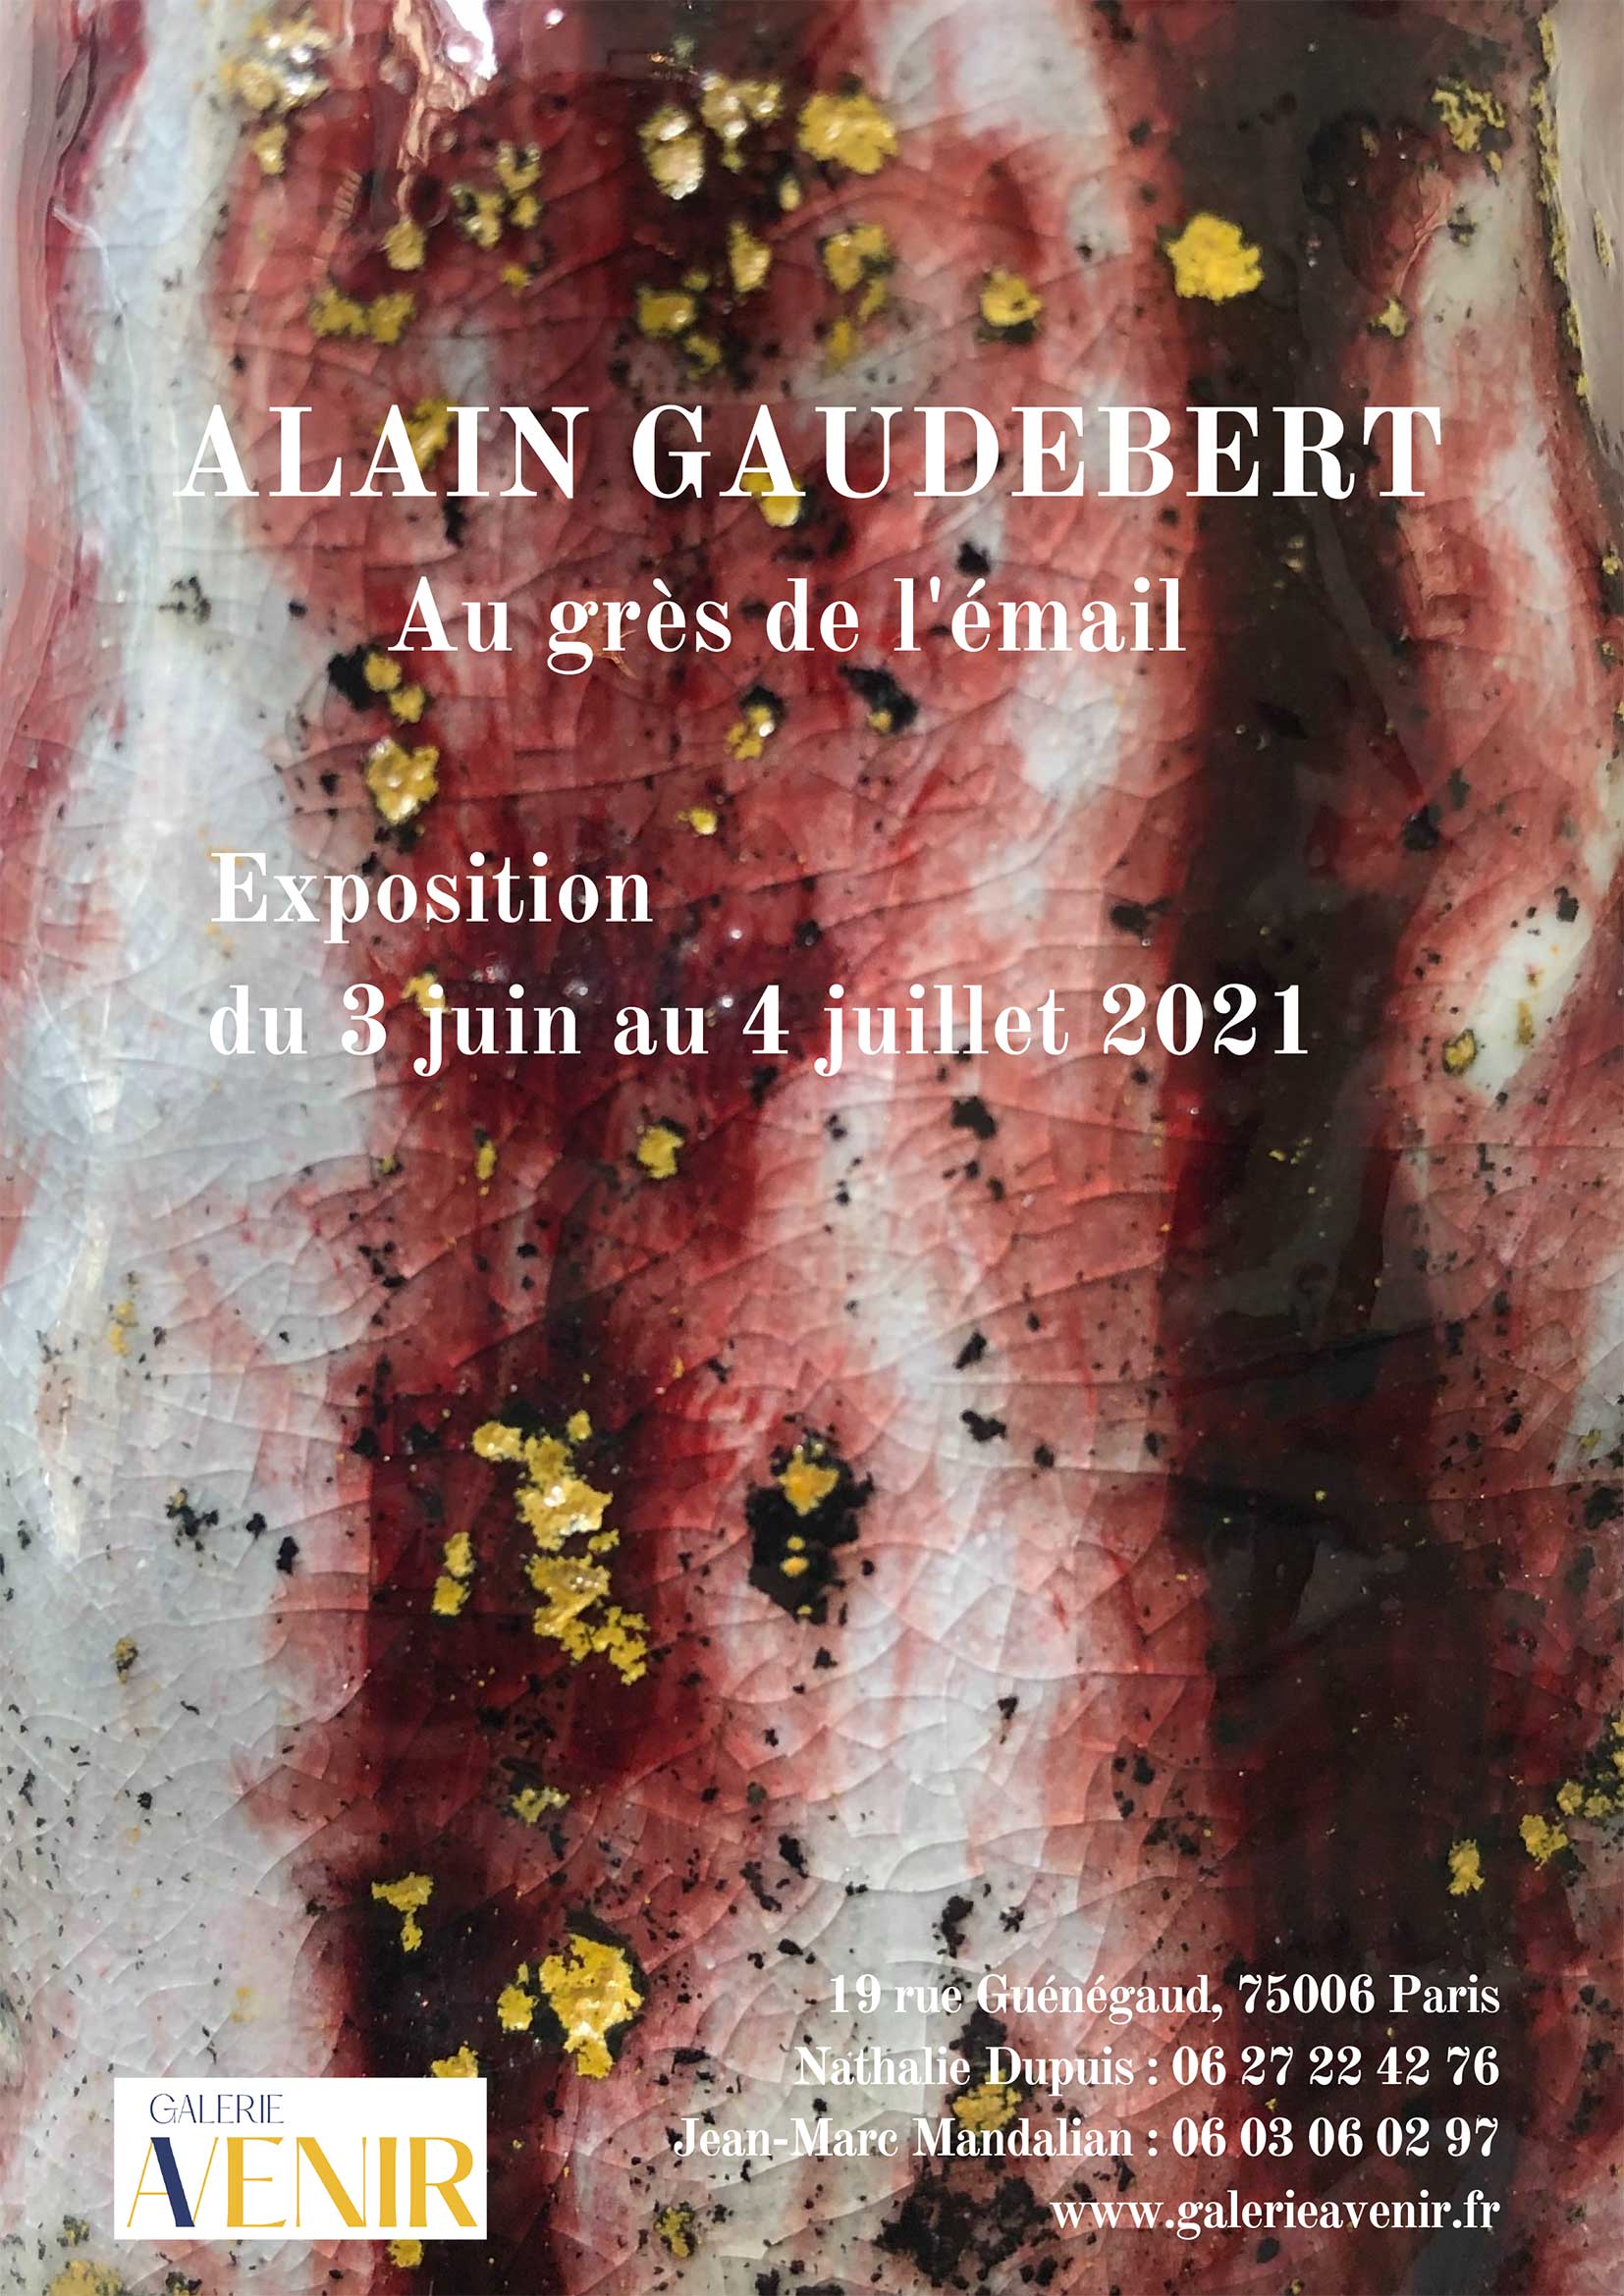 Au grès de l’émail, du 3 juin au 11 juillet 2021 – Galerie Avenir, Paris